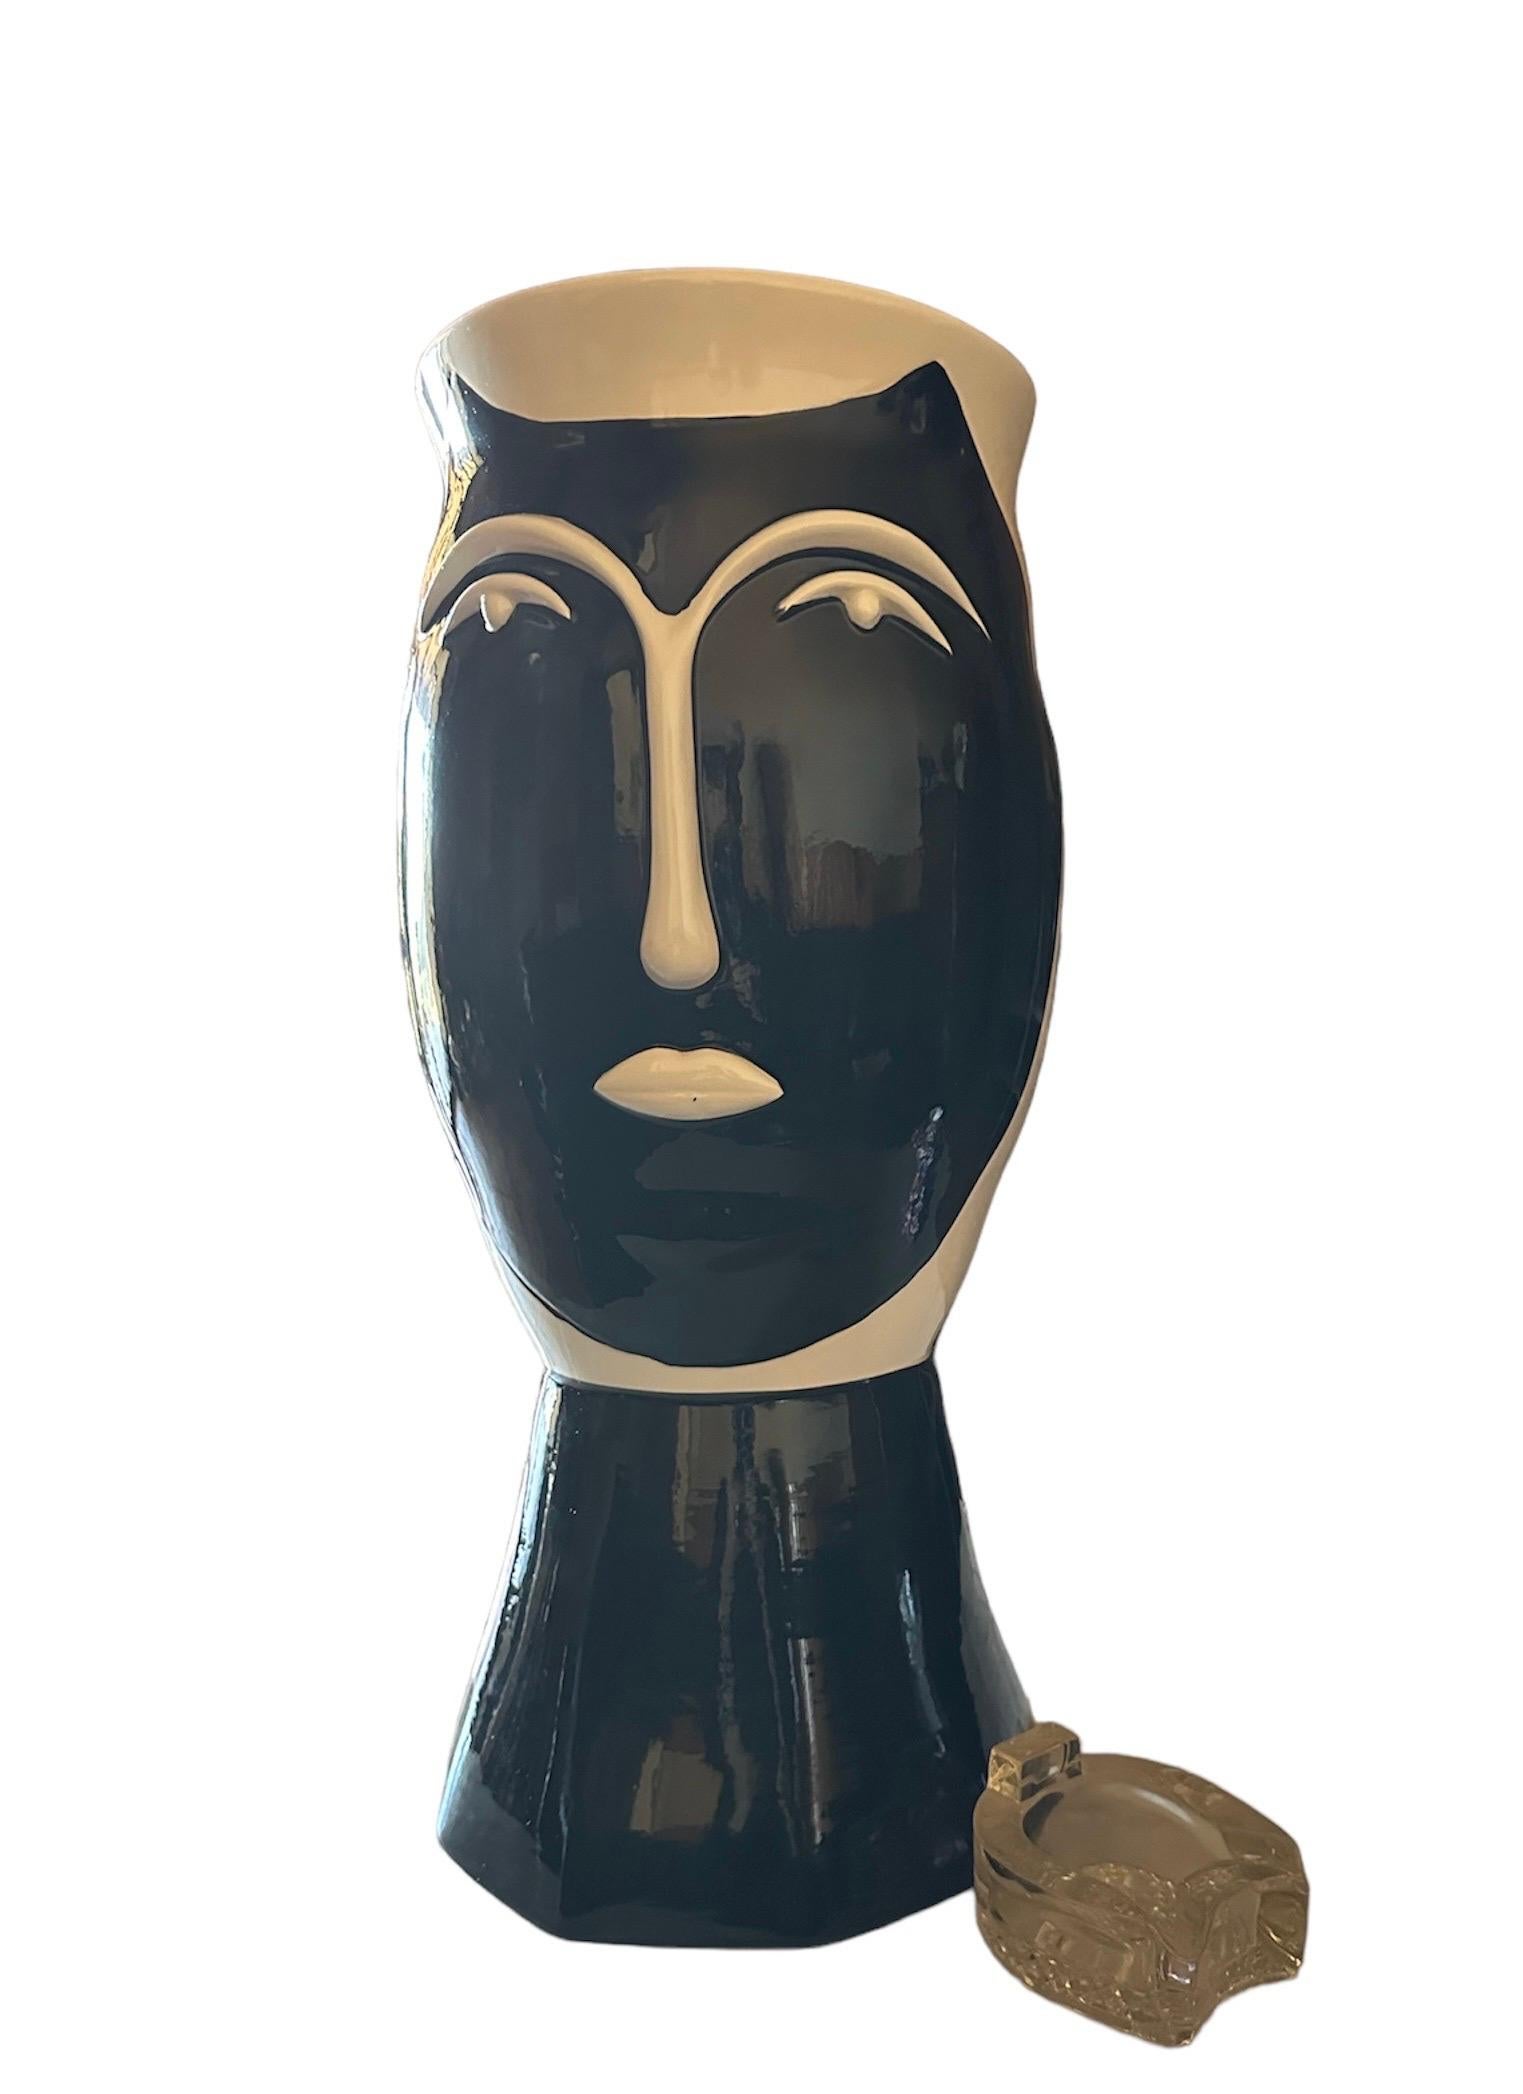 Beeindruckende kubische Vase, handgefertigt, signiert und in limitierter Auflage von Bassano
Perfekter Zustand